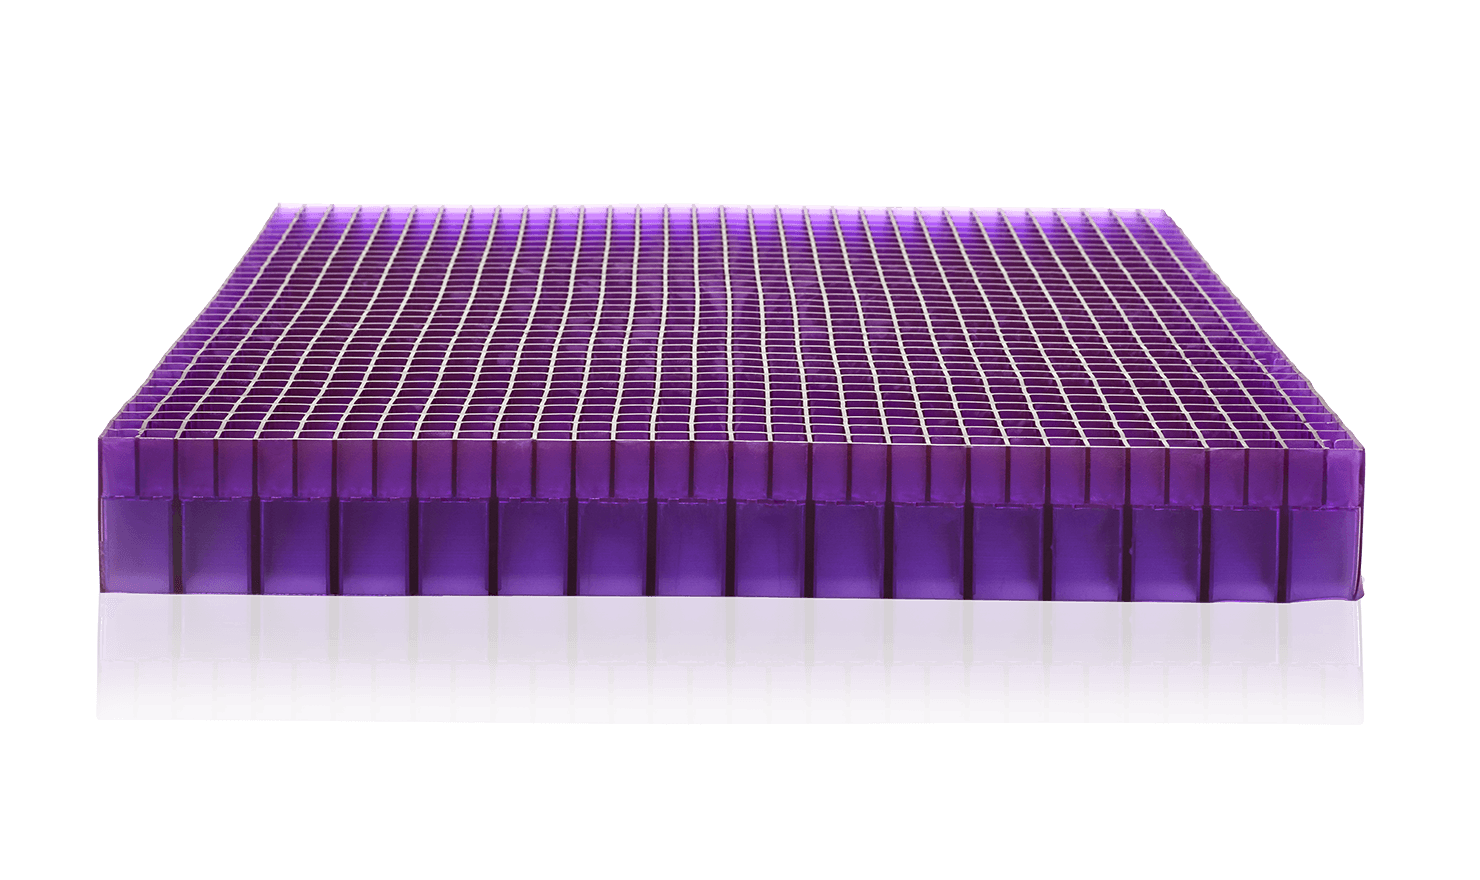 Purple Royal Seat Cushion 17.5“ x 15.75“, Temperature Neutral